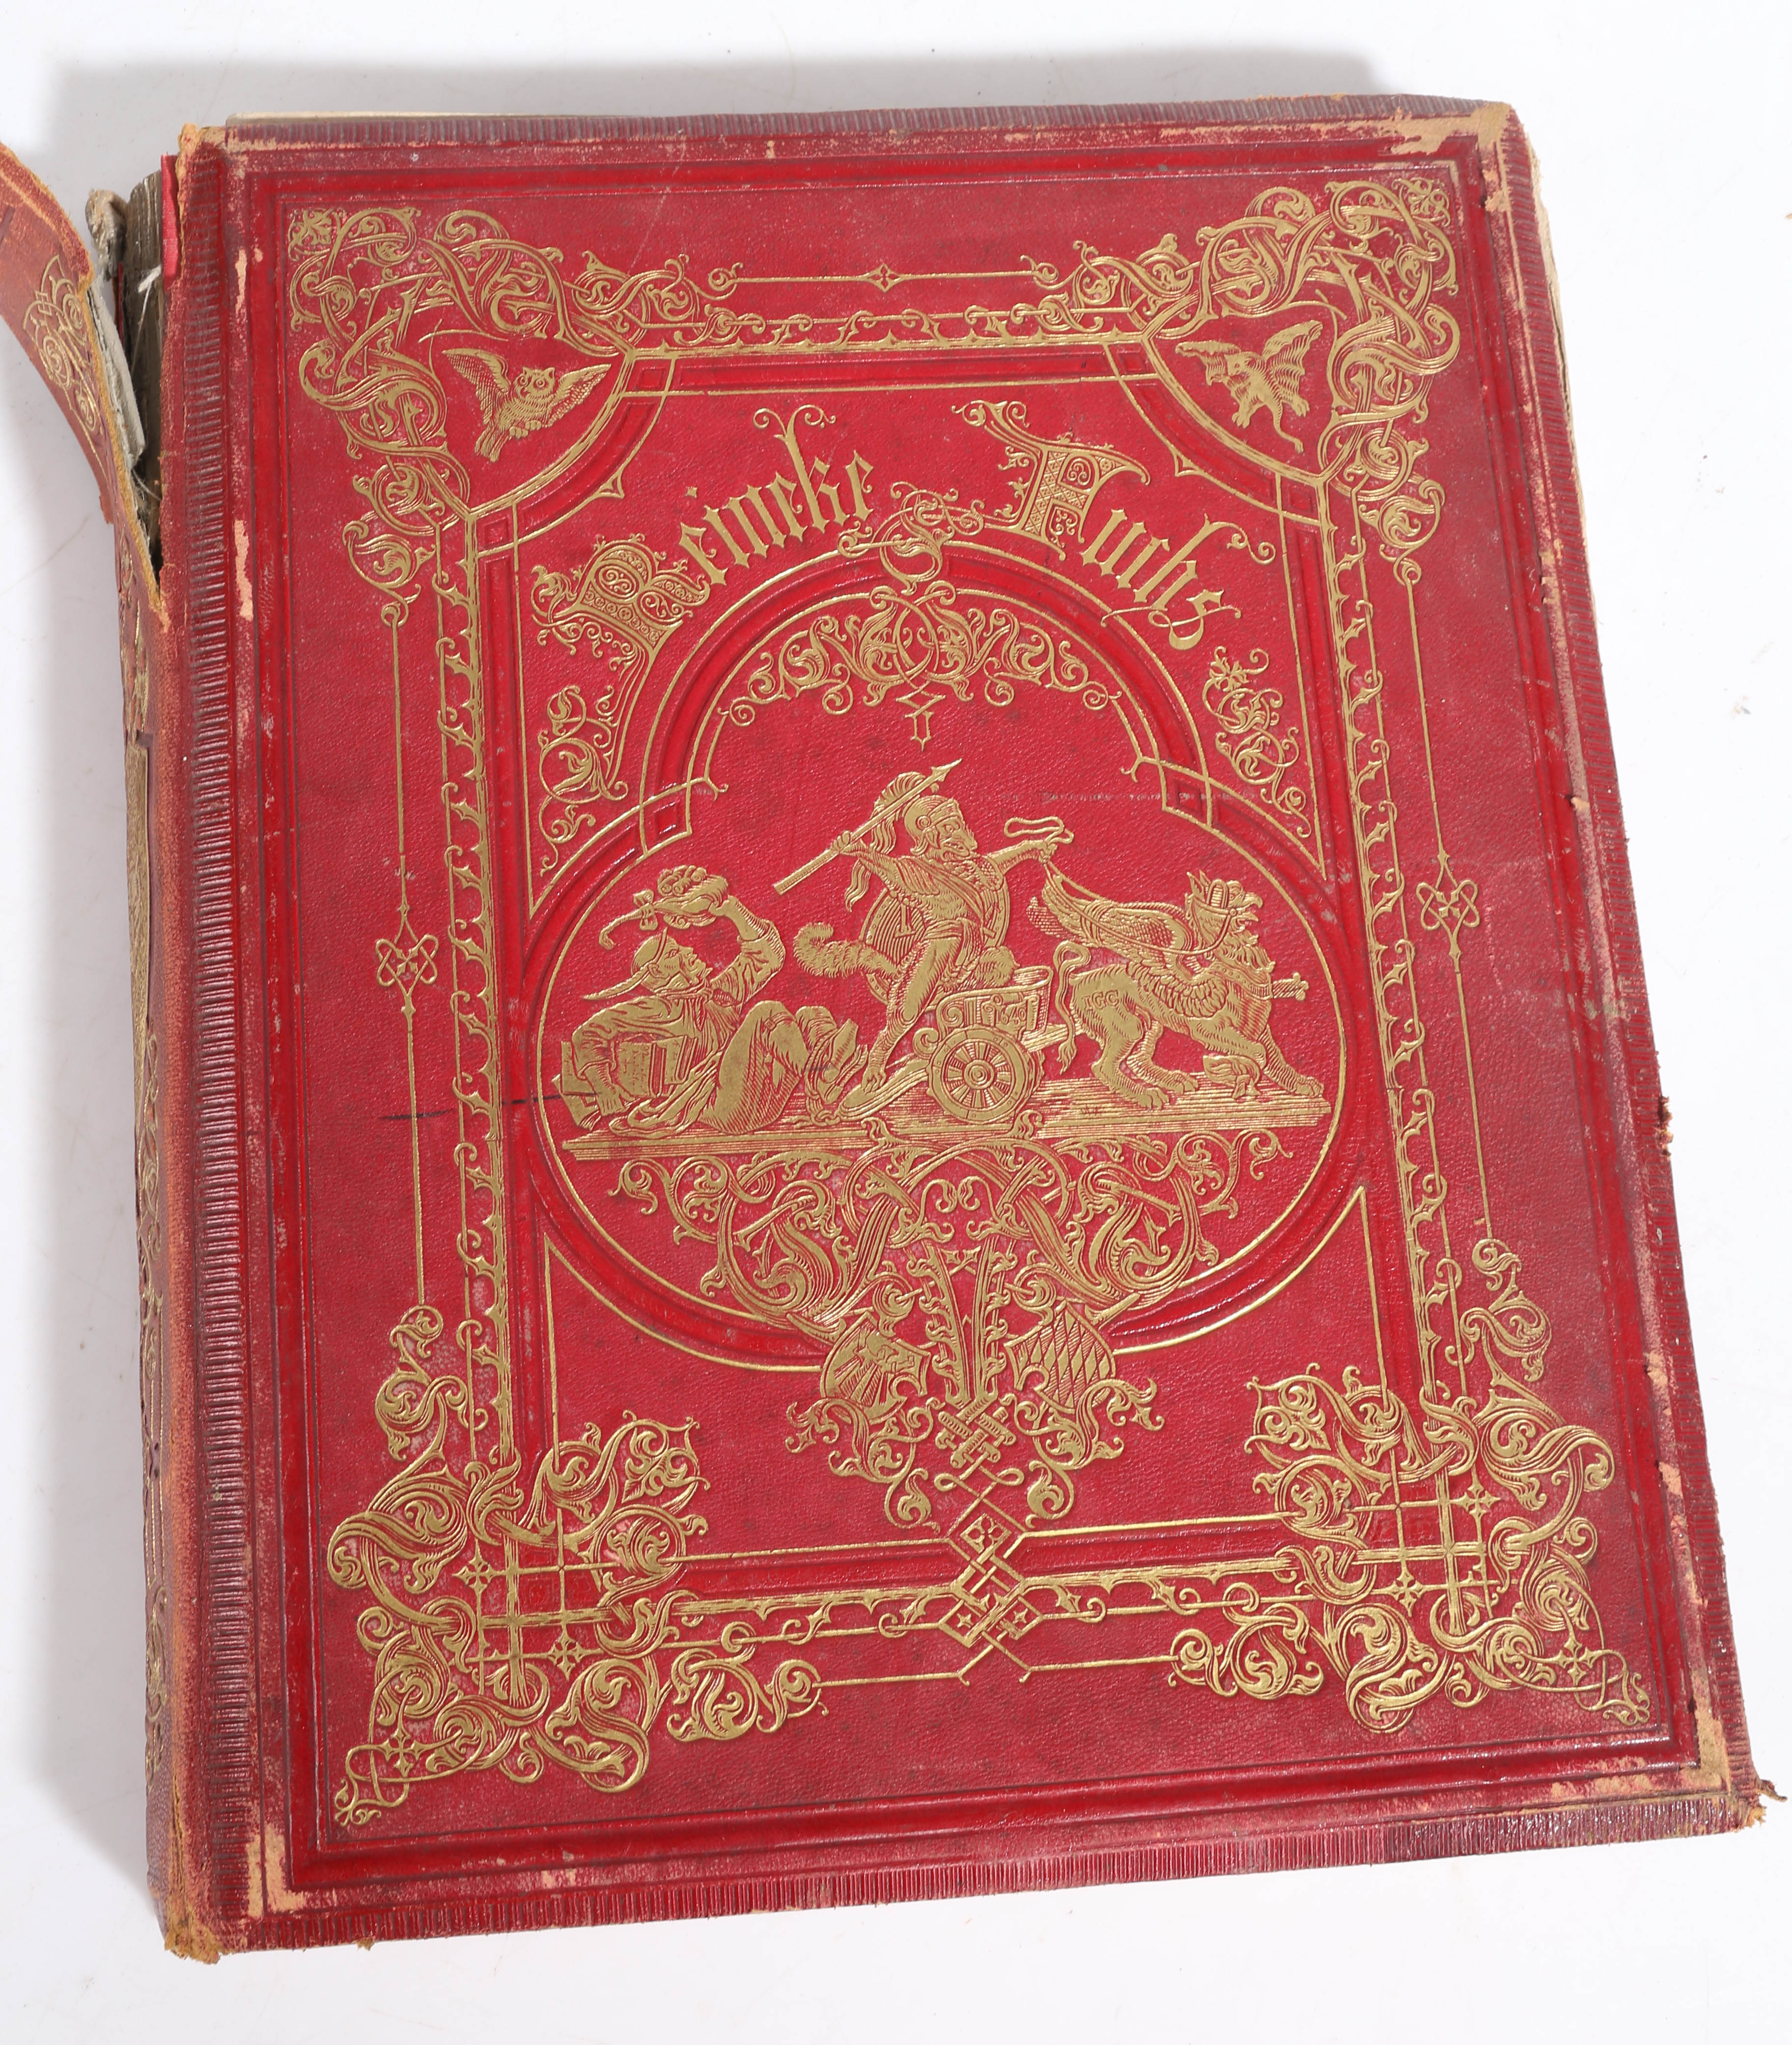 Wilhelm Von Kaulbach "Reineke Fuchs von Wolfgang von Goethe" first edition published 1867, having - Image 4 of 7